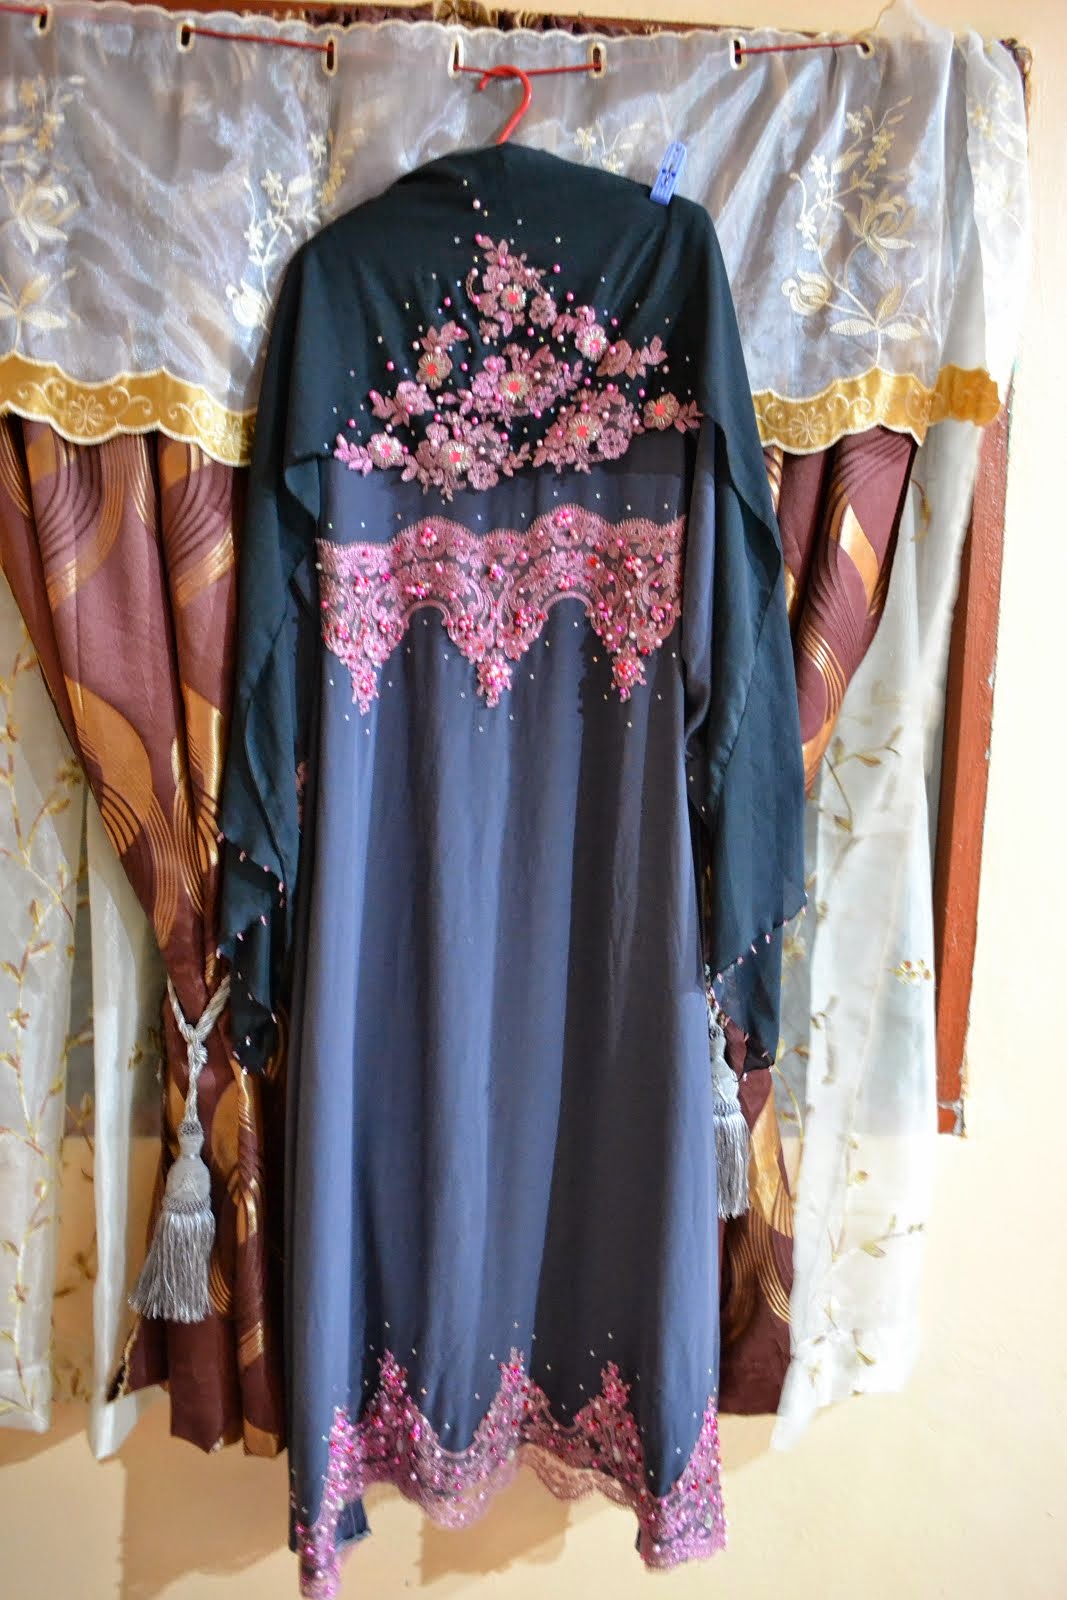 My e-day dress n veil :)